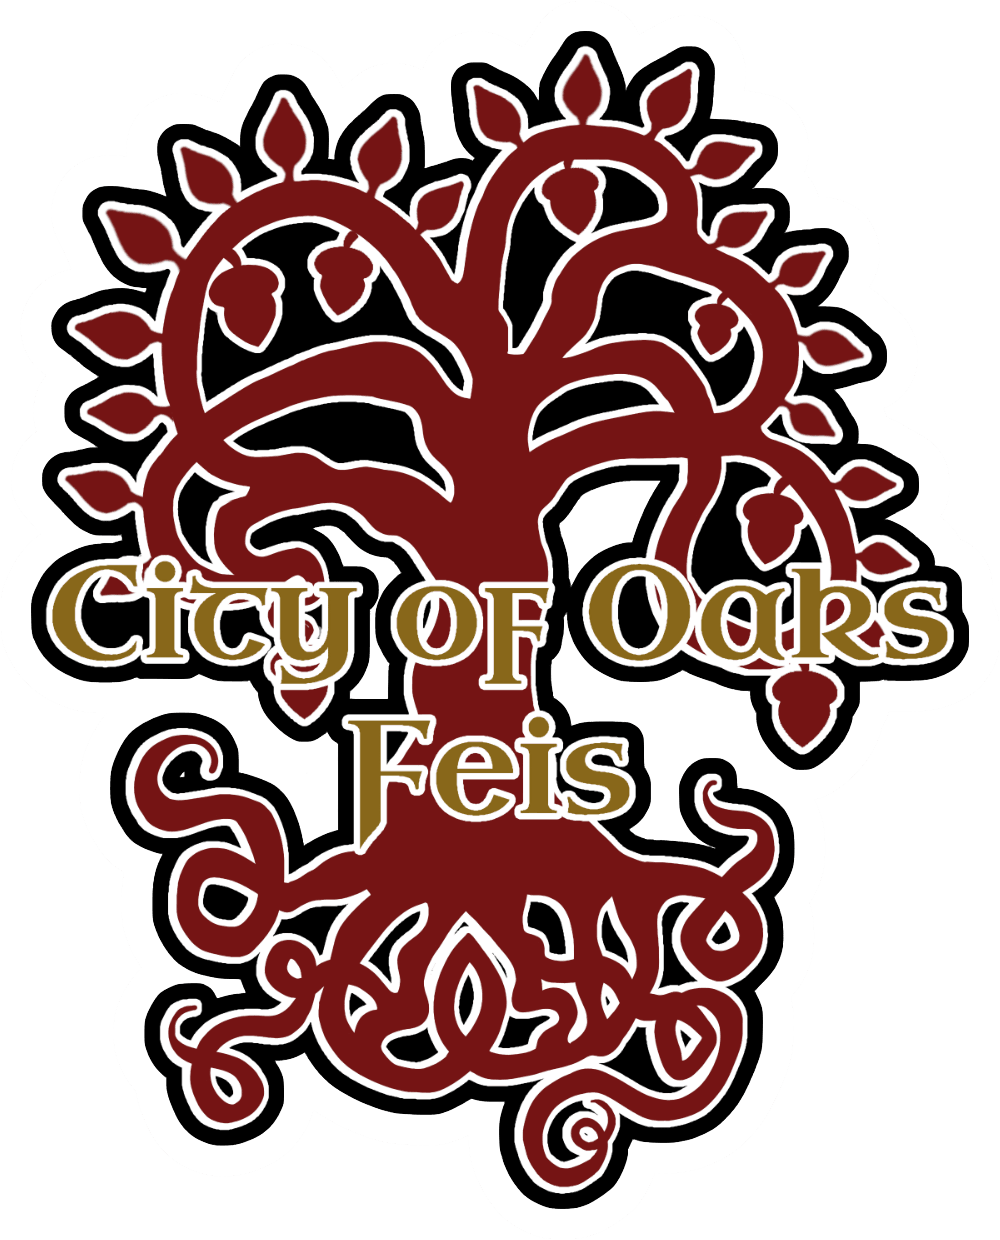 logo for City of Oaks Feis